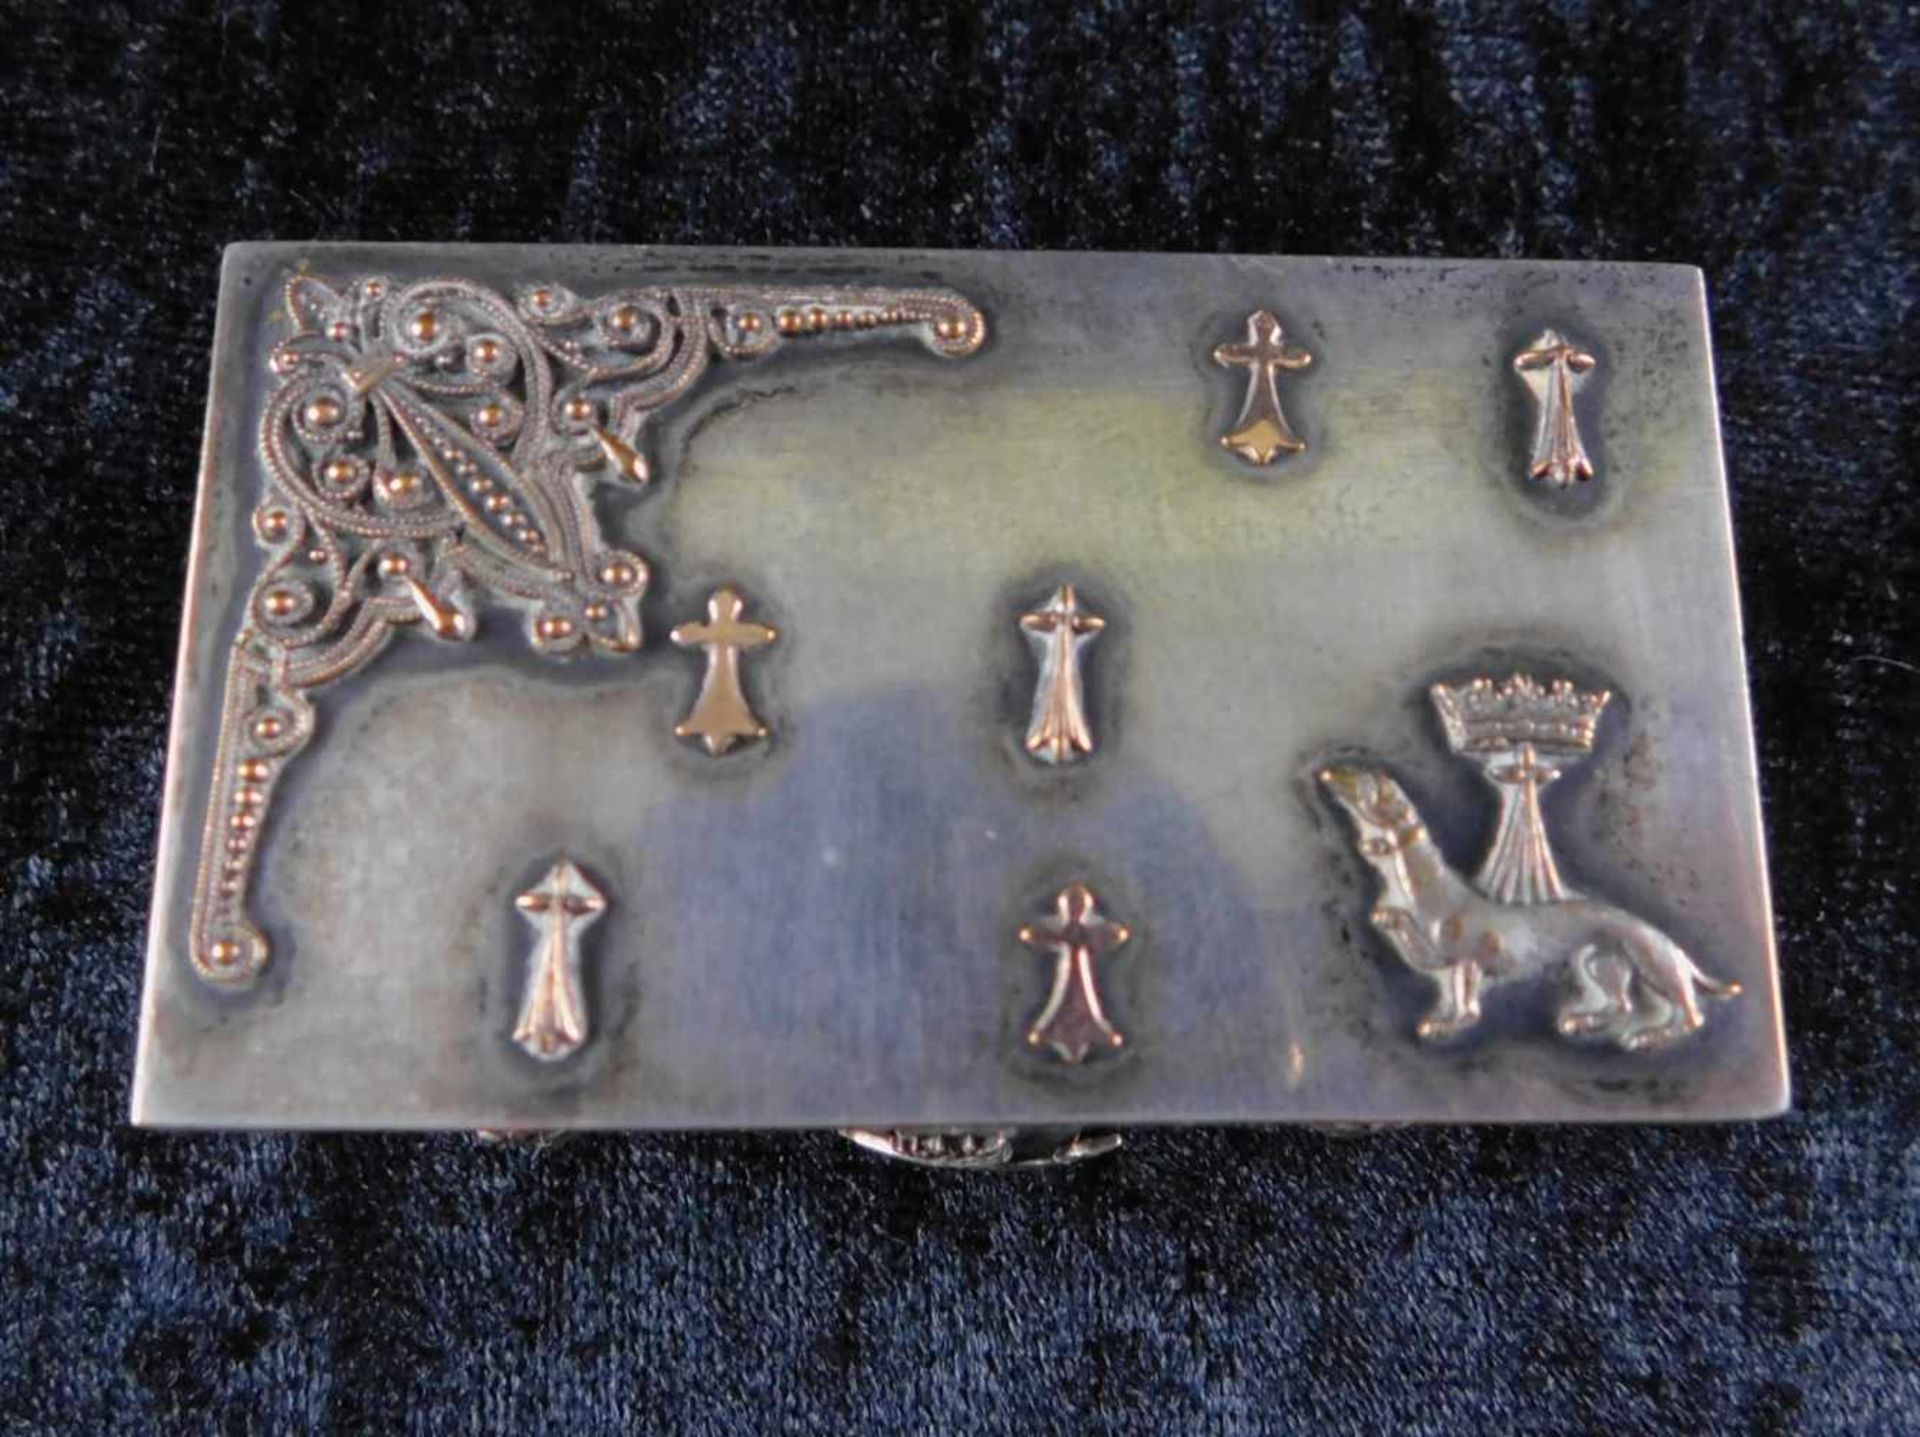 zurückgezogen / withdrawn---Kleine Dose, Silber, China, 1. H. 20. Jhdt., 109 g, Höhe 3,5 cm, - Image 3 of 3